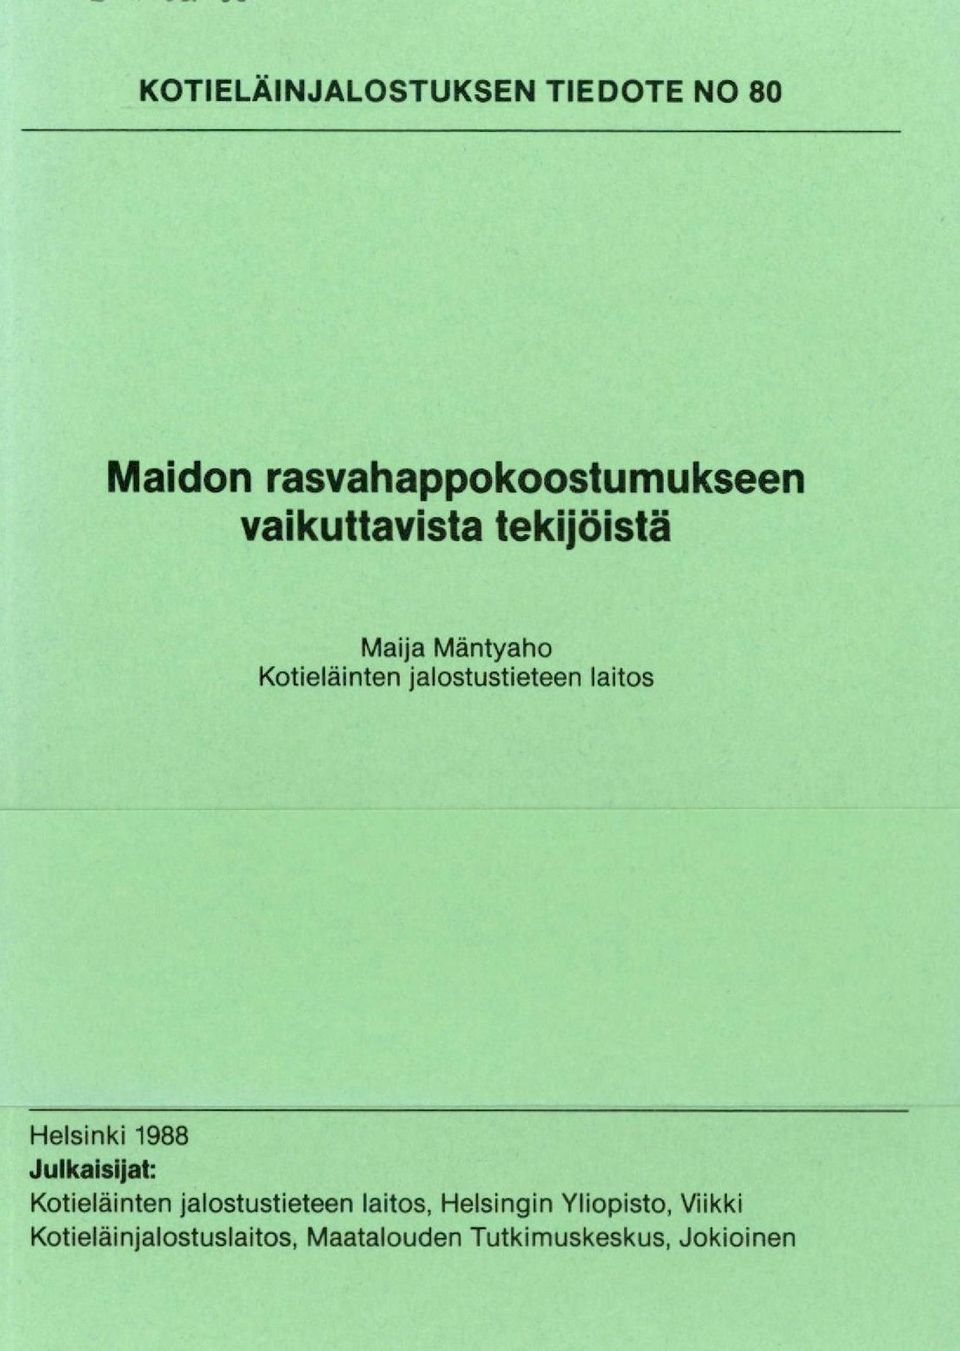 laitos Helsinki 1988 Julkaisijat: Kotieläinten jalostustieteen laitos,